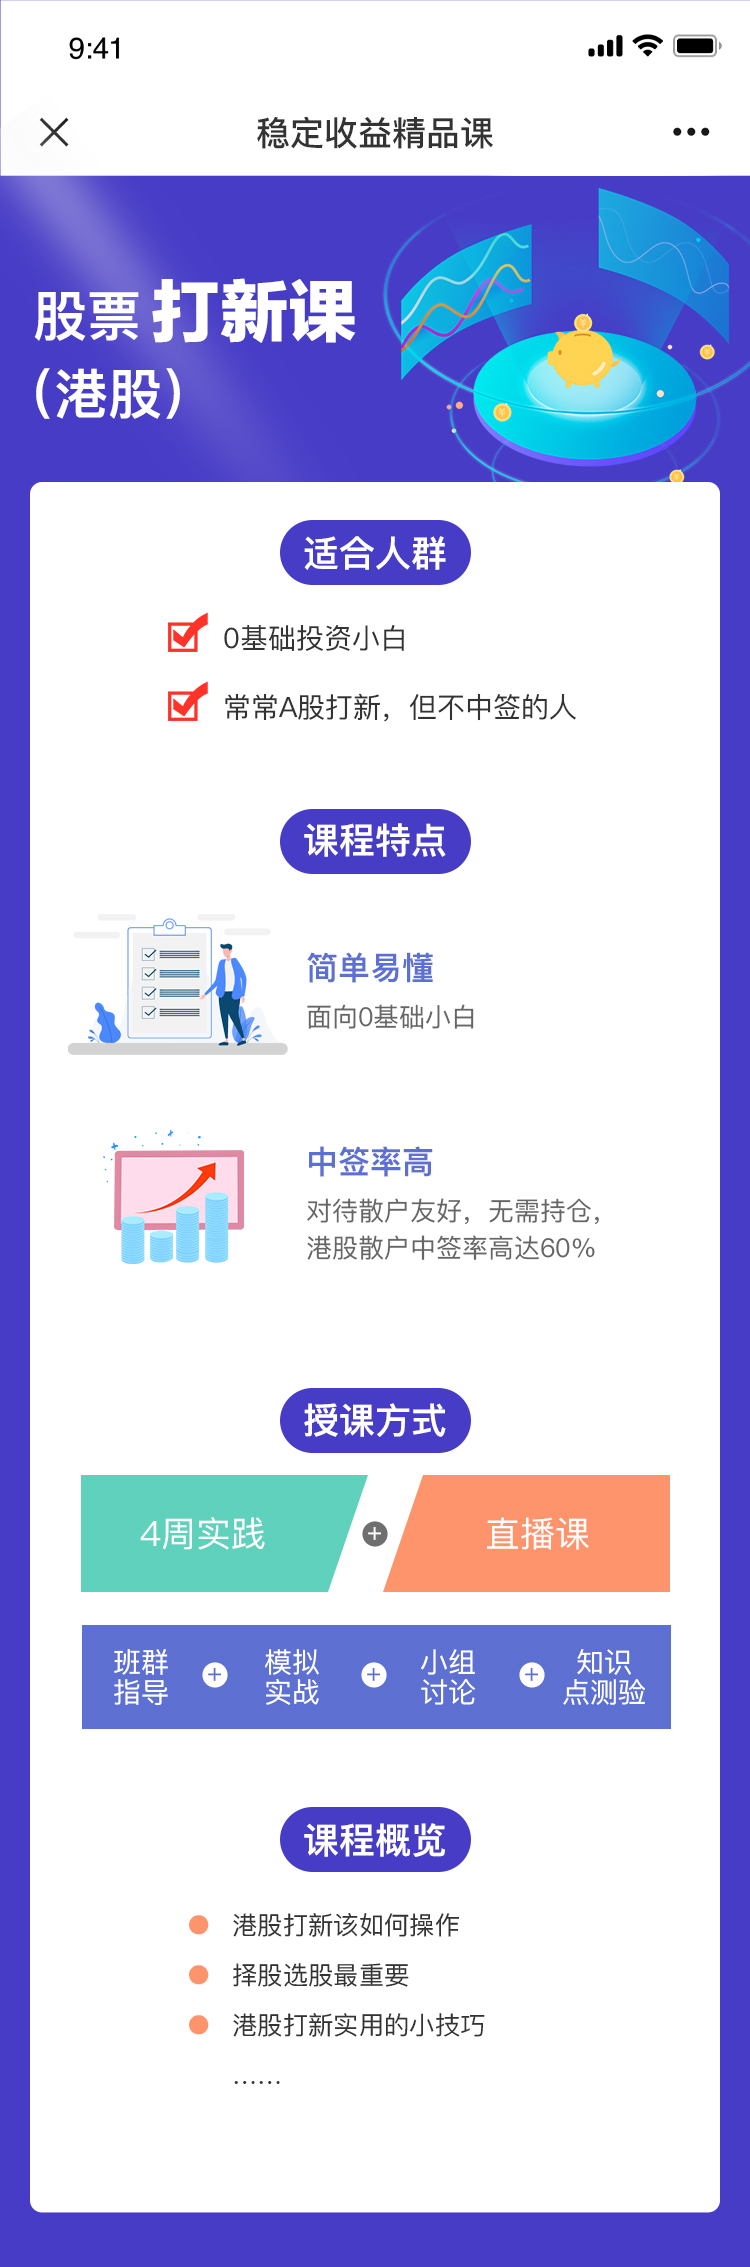 江苏网站建设文案app_(江苏网文电子科技有限公司)